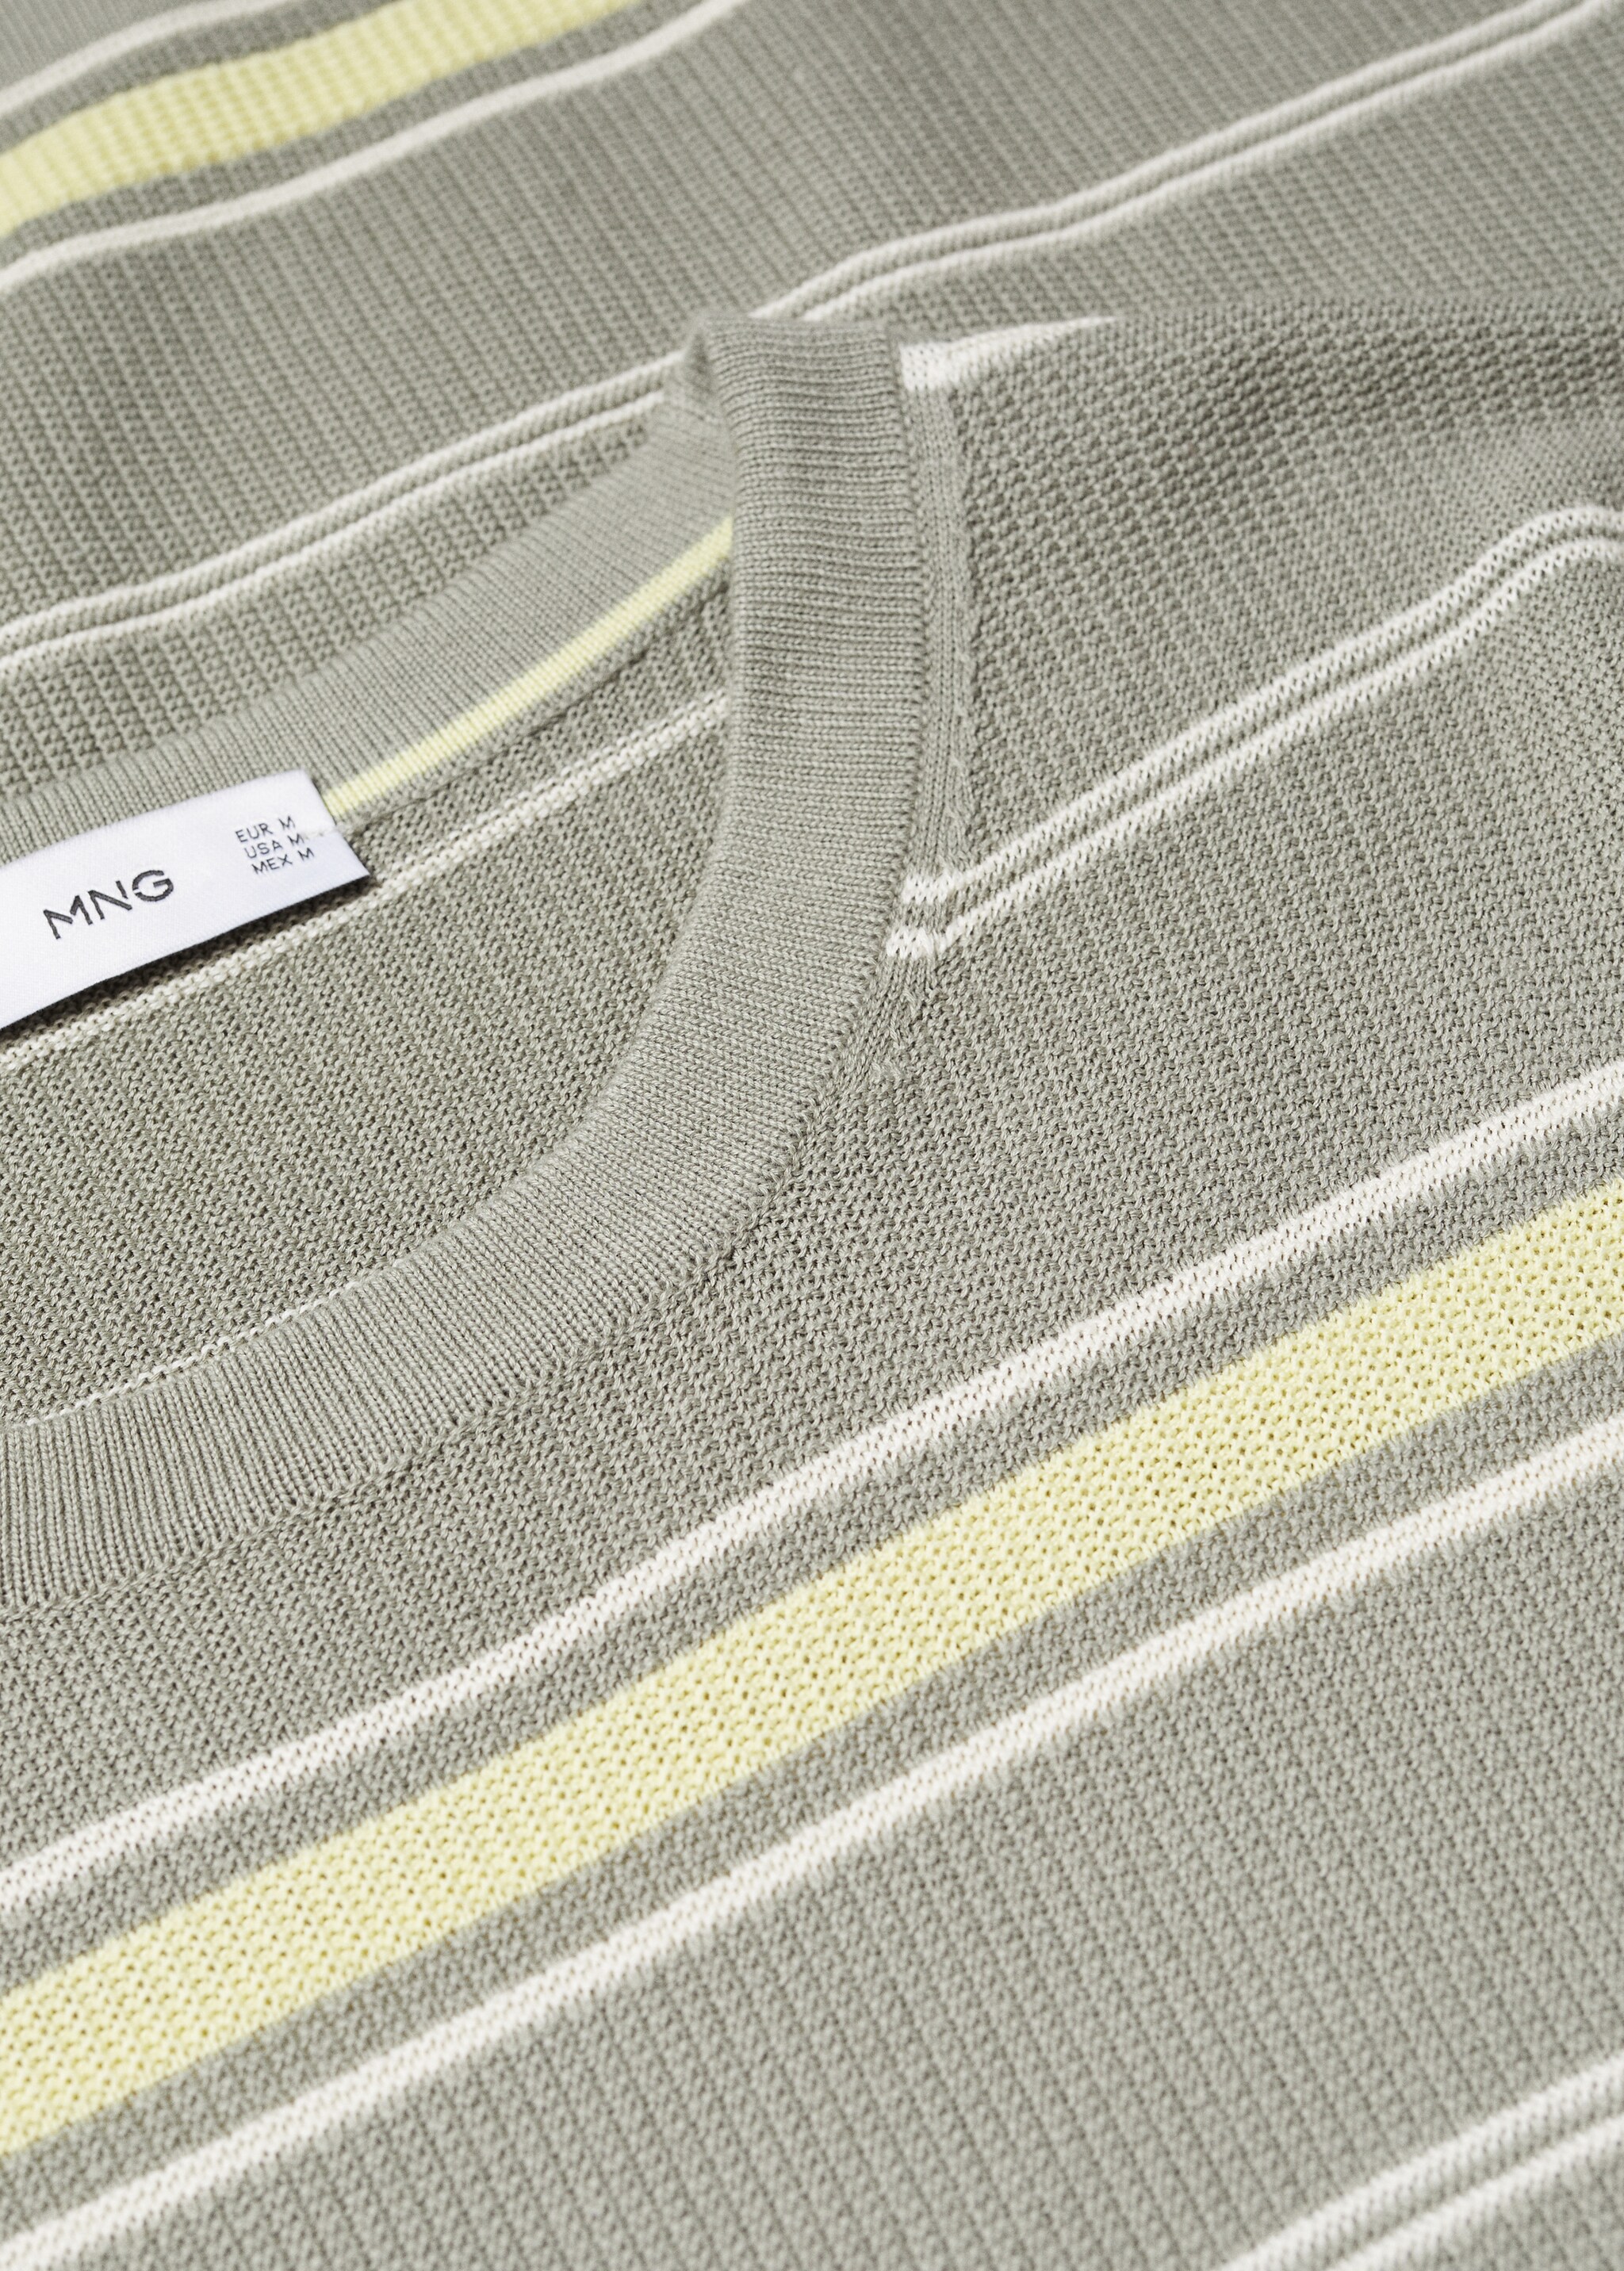 Camiseta 100% algodón estructura rayas - Detalle del artículo 8